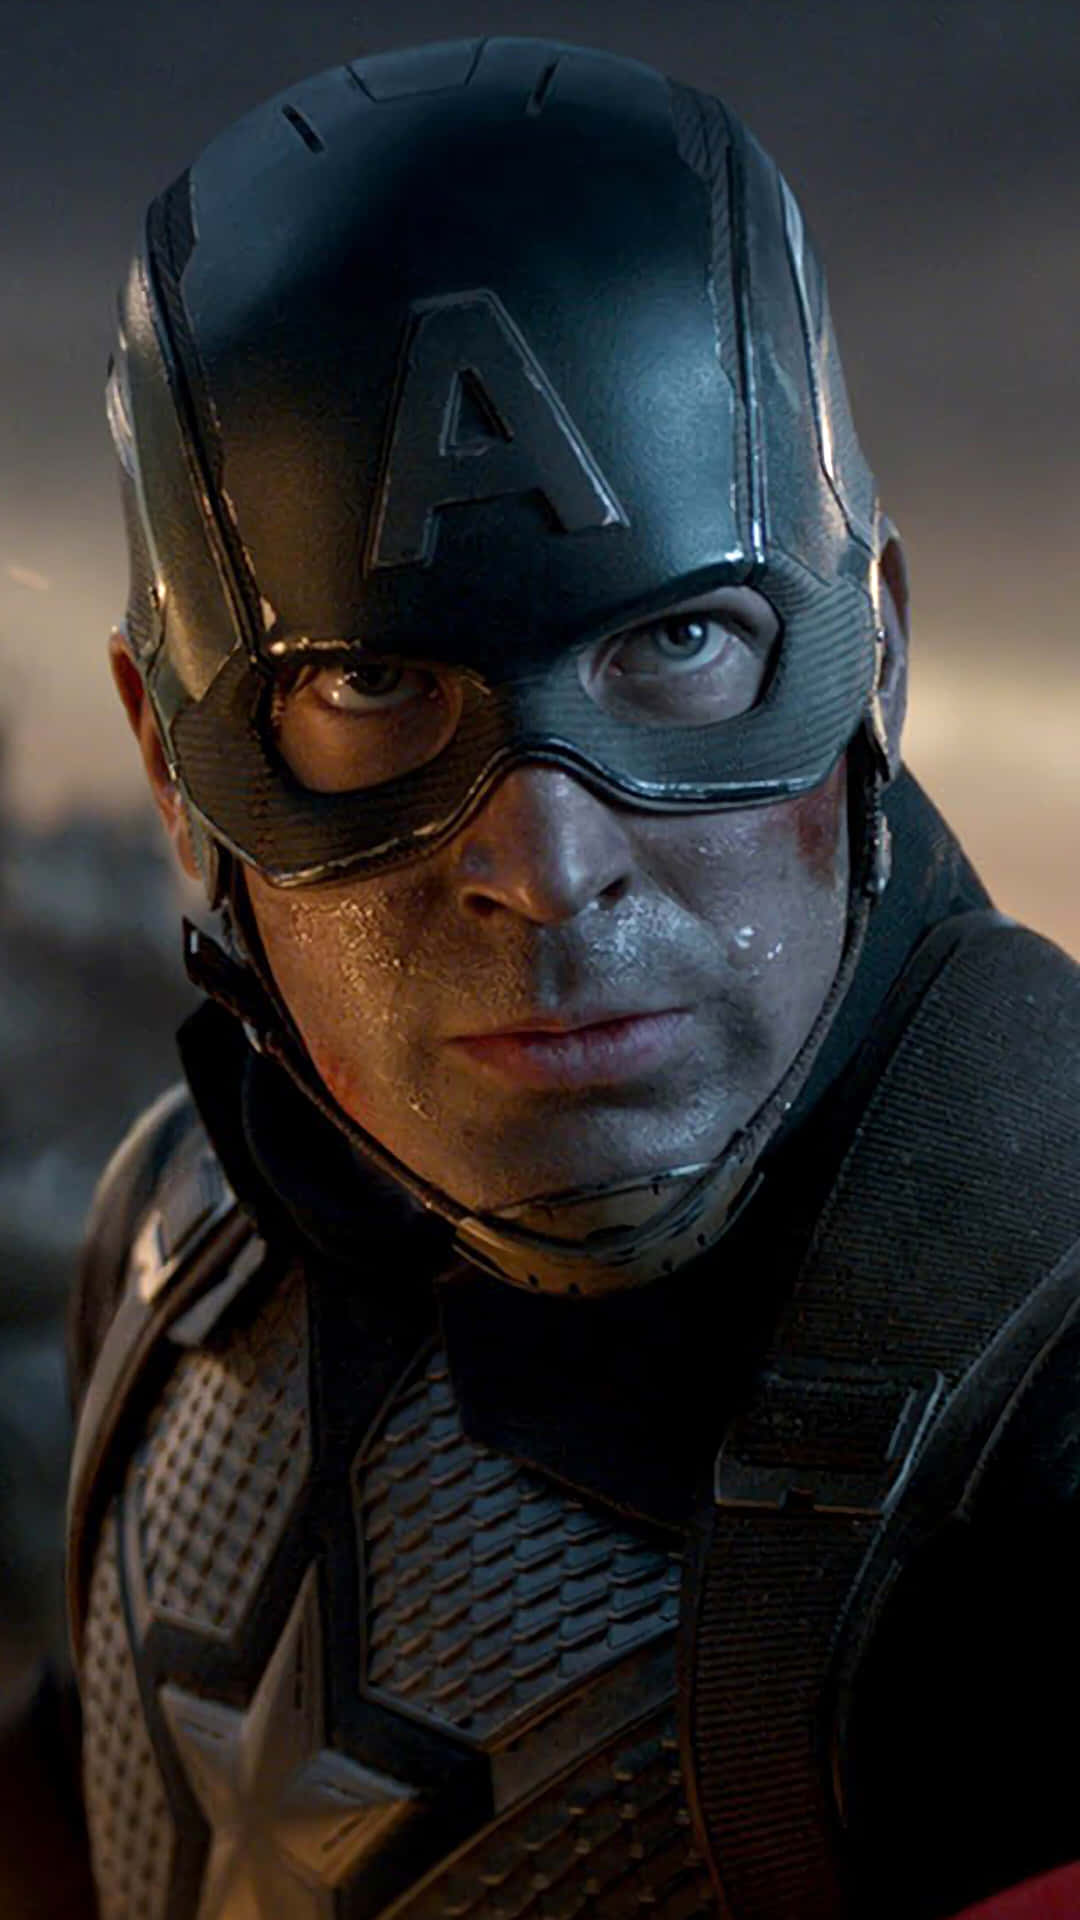 Den ægte helt, Captain America, i handling i den spændende Marvel-blockbuster Endgame. Wallpaper